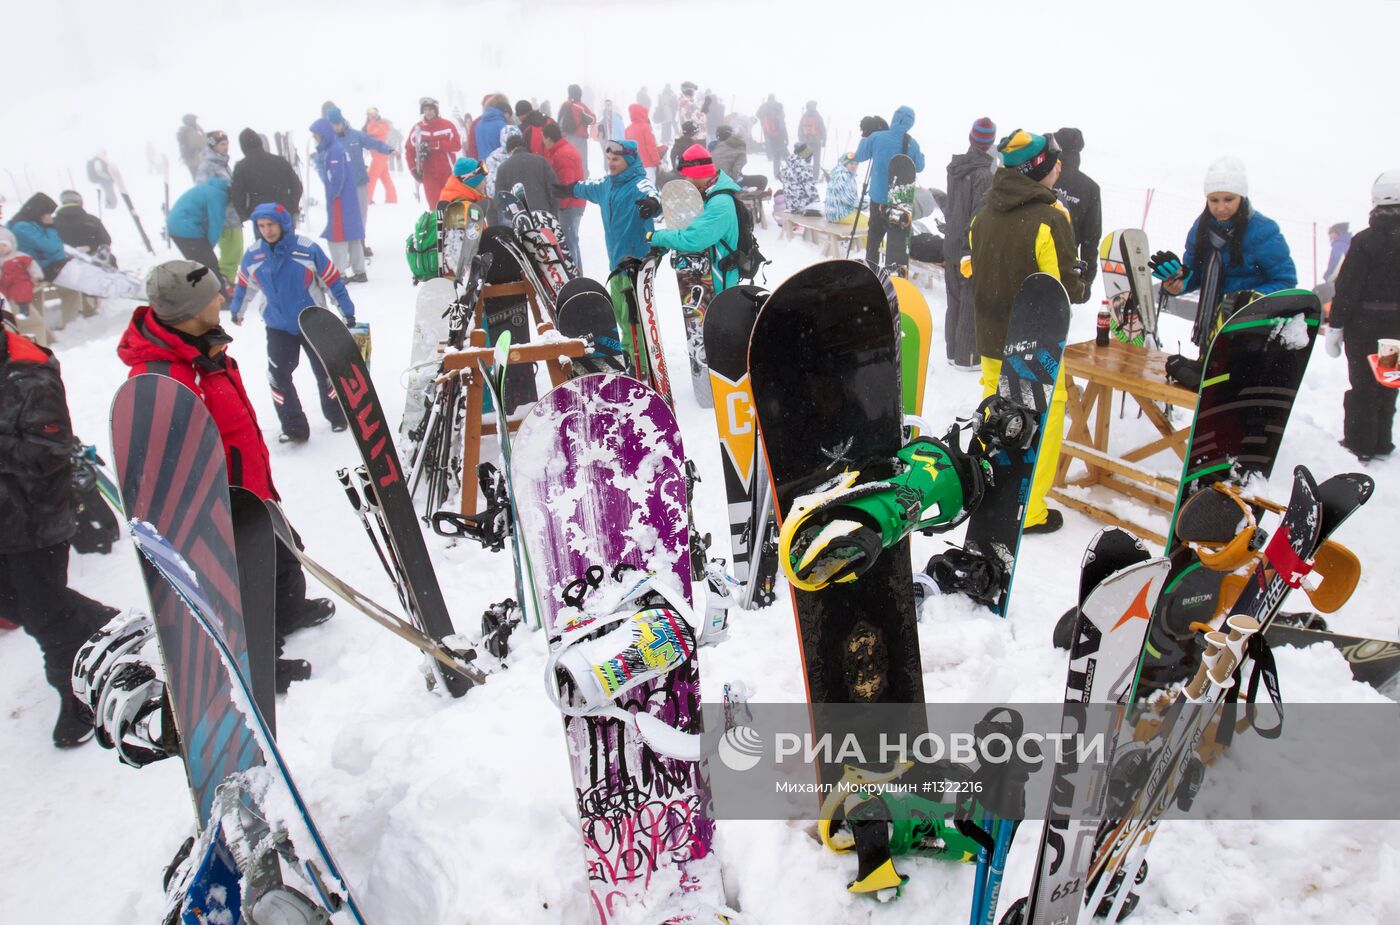 Начало сезона катания на горнолыжных склонах в Красной поляне